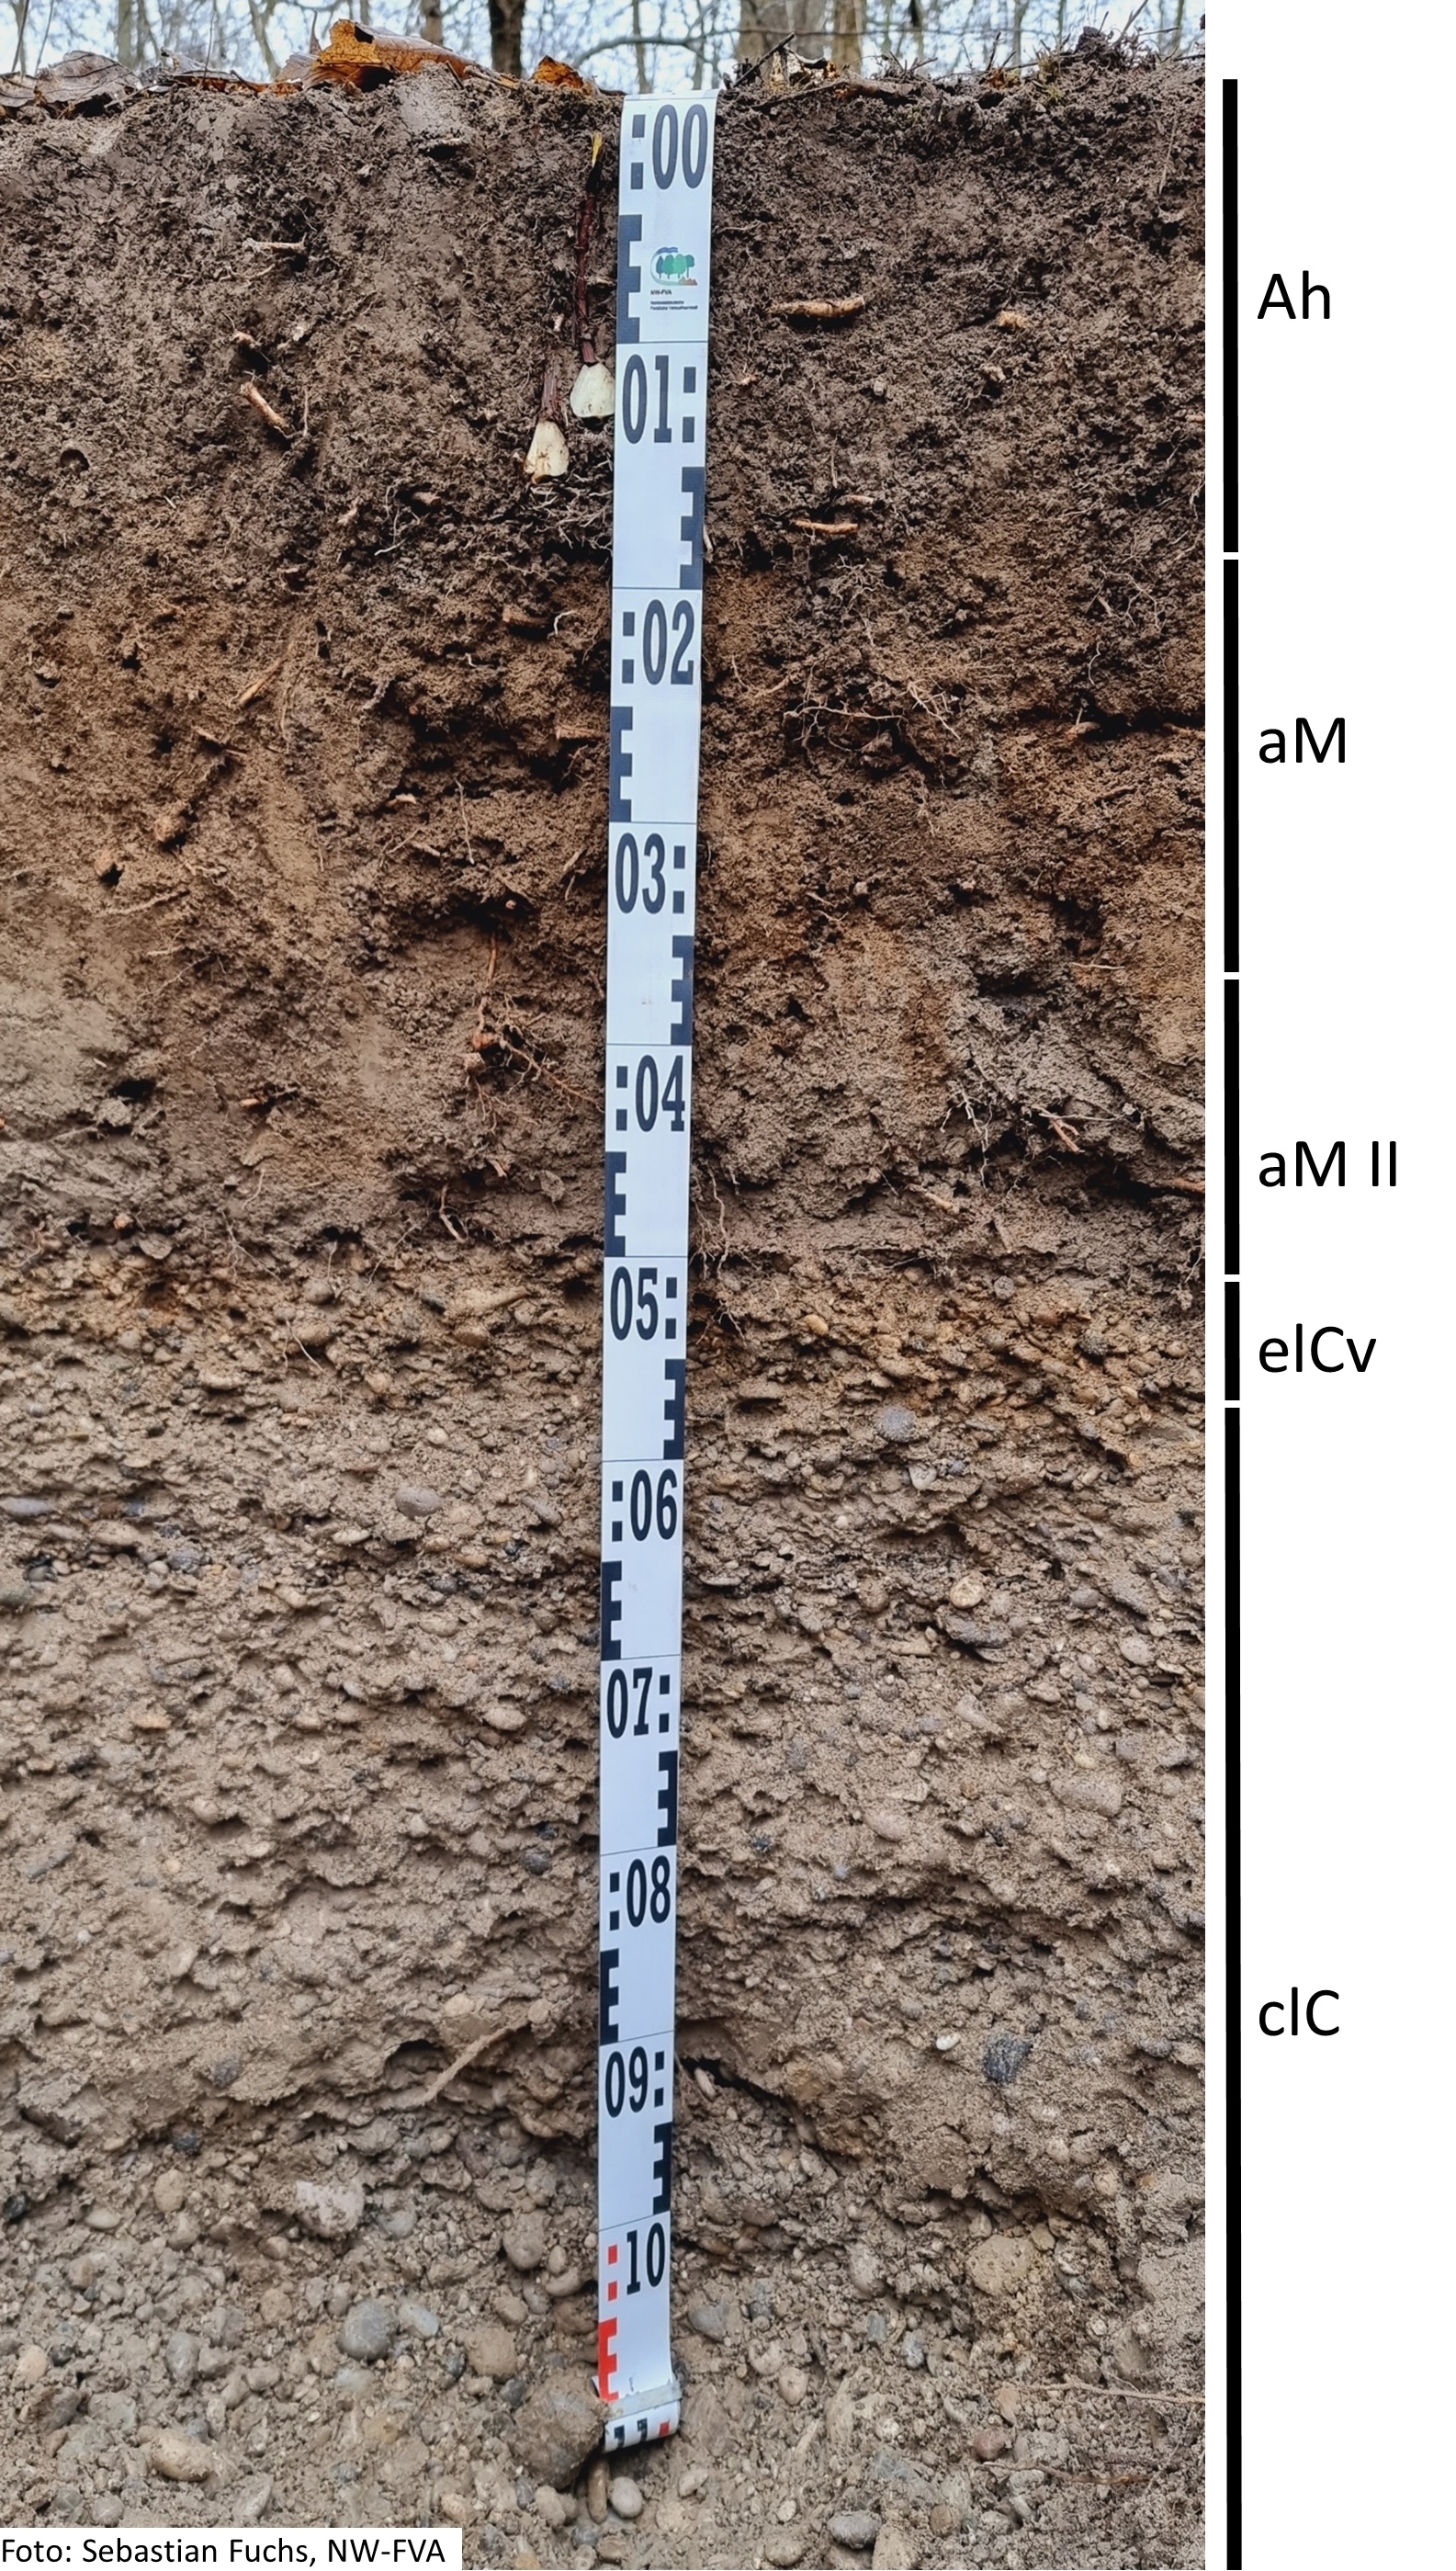 Das Foto zeigt einen senkrechten Schnitt durch den Boden der Untersuchungsfläche. Das Bodenprofil enthält folgende Bodenhorizonte: Ah, aM, aM II, elCv, clC